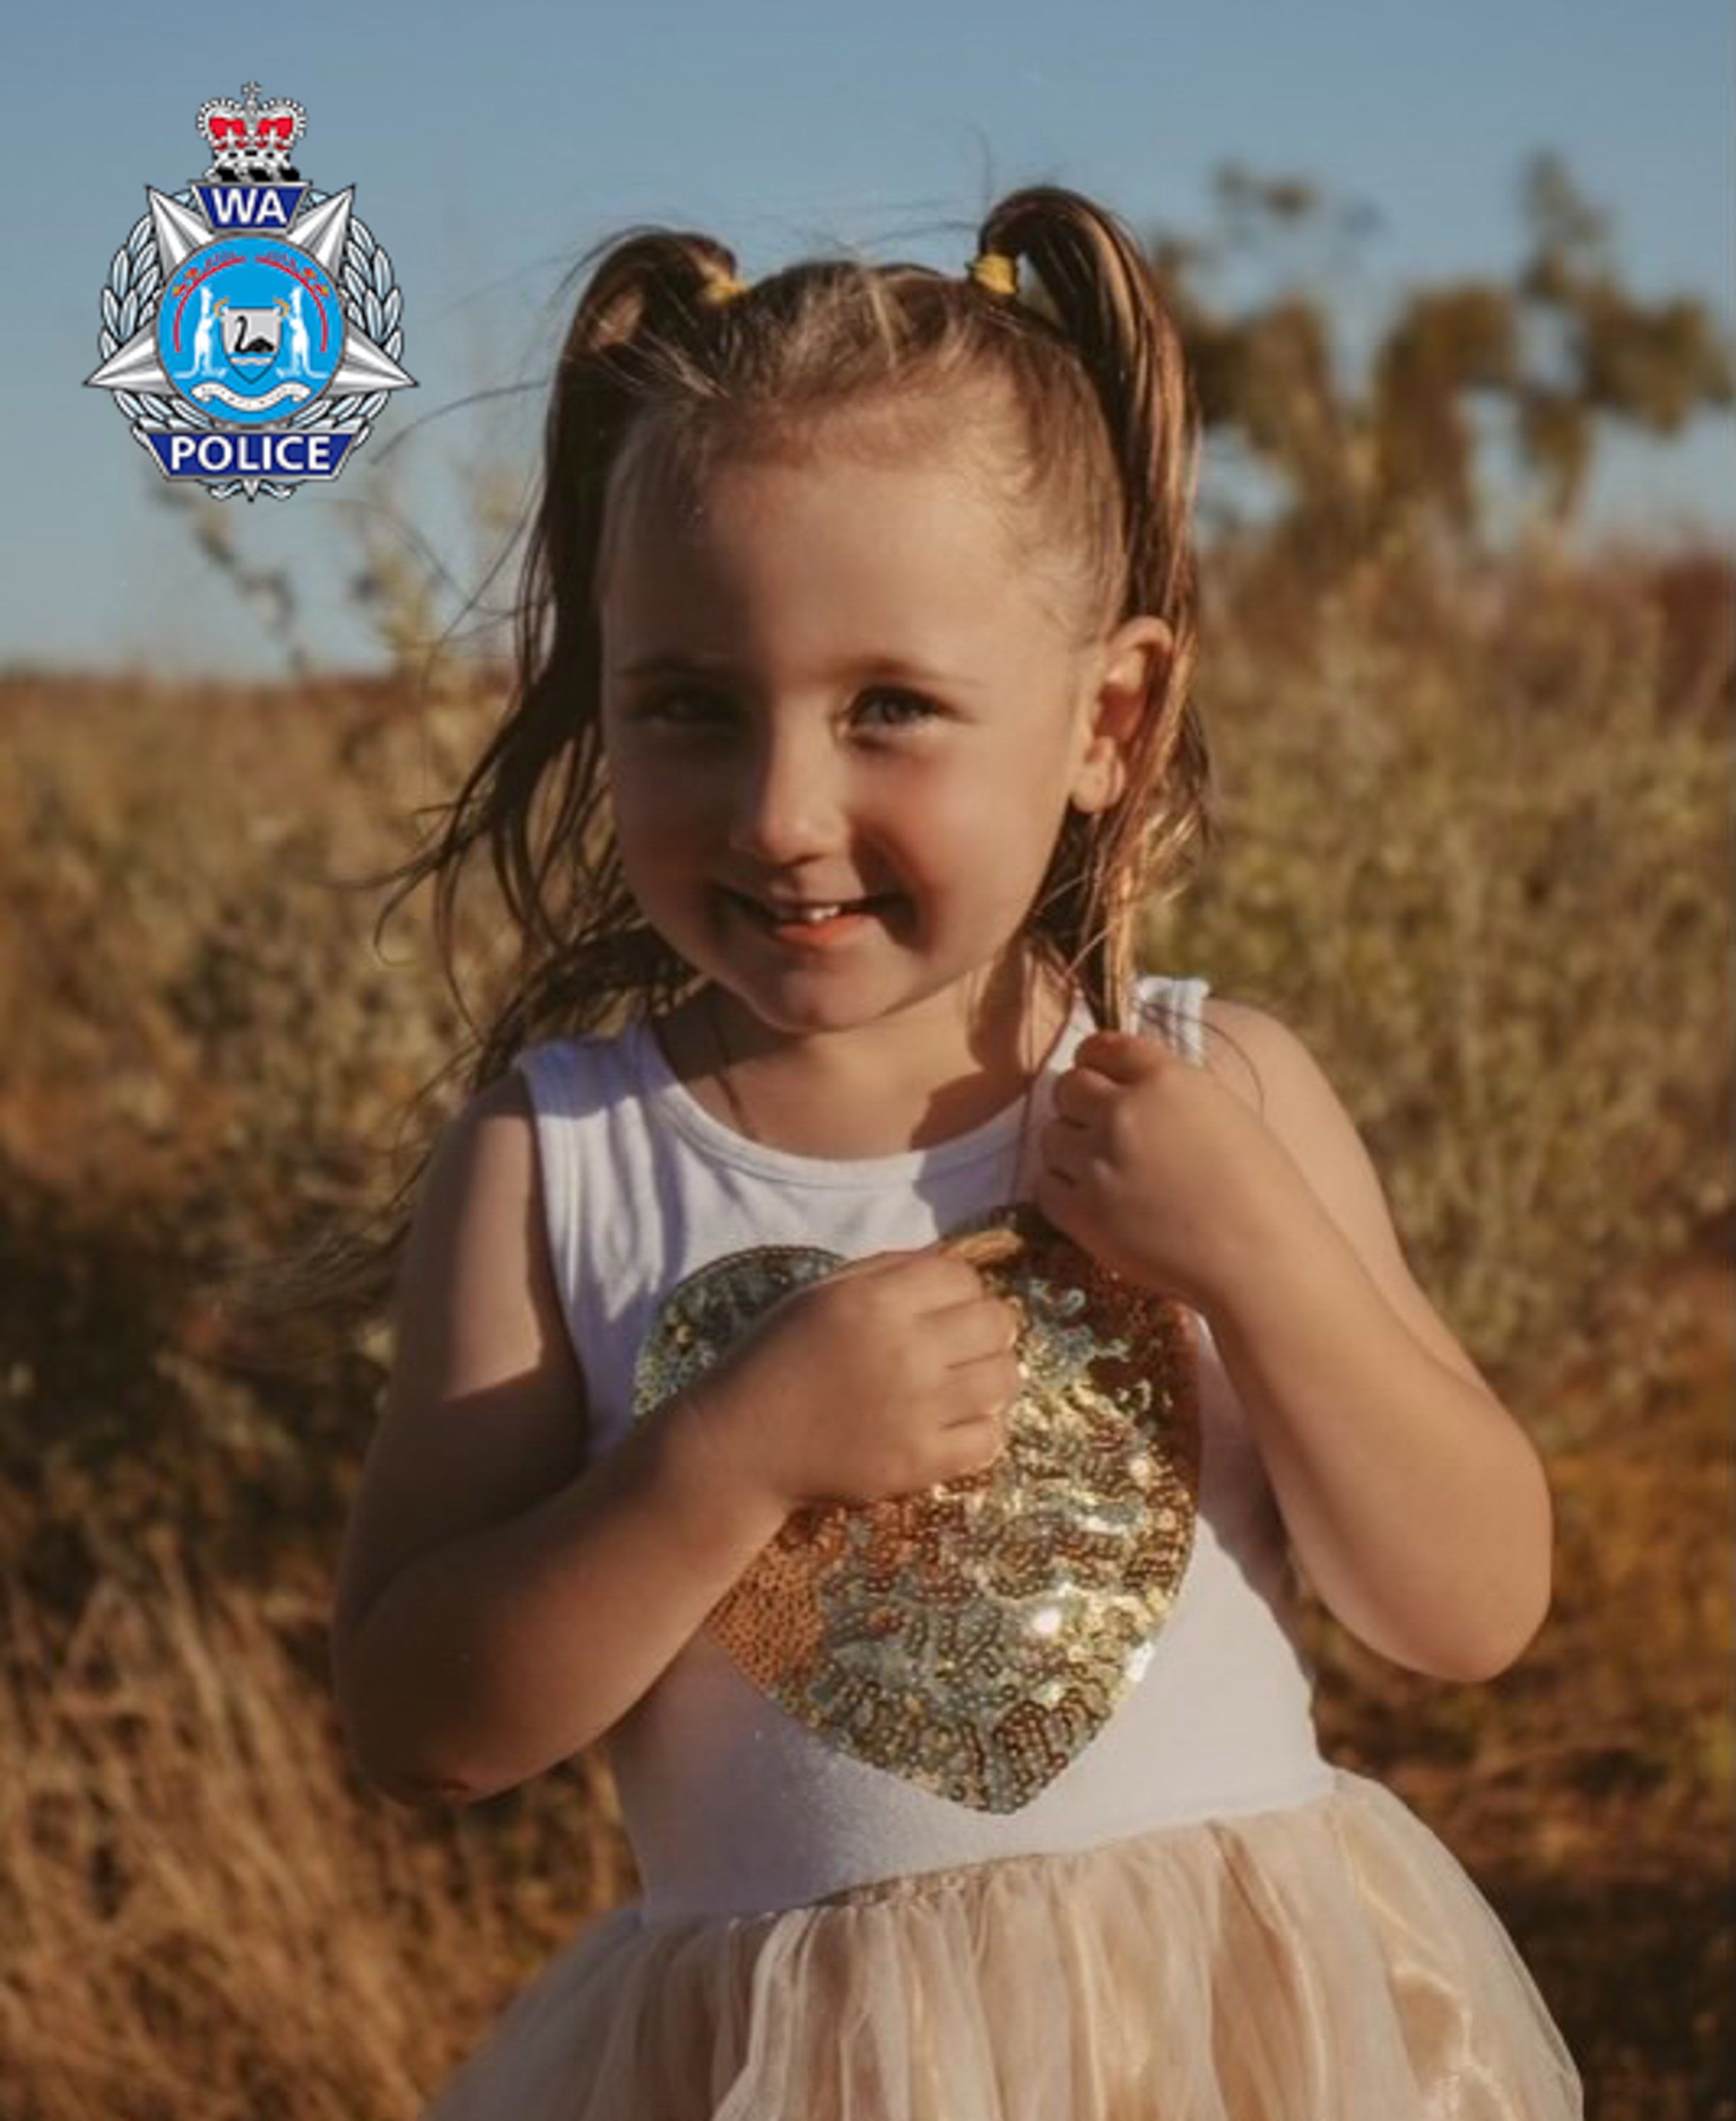 Imagen facilitada el pasado martes por la policía australiana de Cleo Smith, una niña de 4 años desaparecida en un camping del oeste del país el sábado 16 de octubre. EFE/EPA/WESTERN AUSTRALIA POLICE FORCE HANDOUT